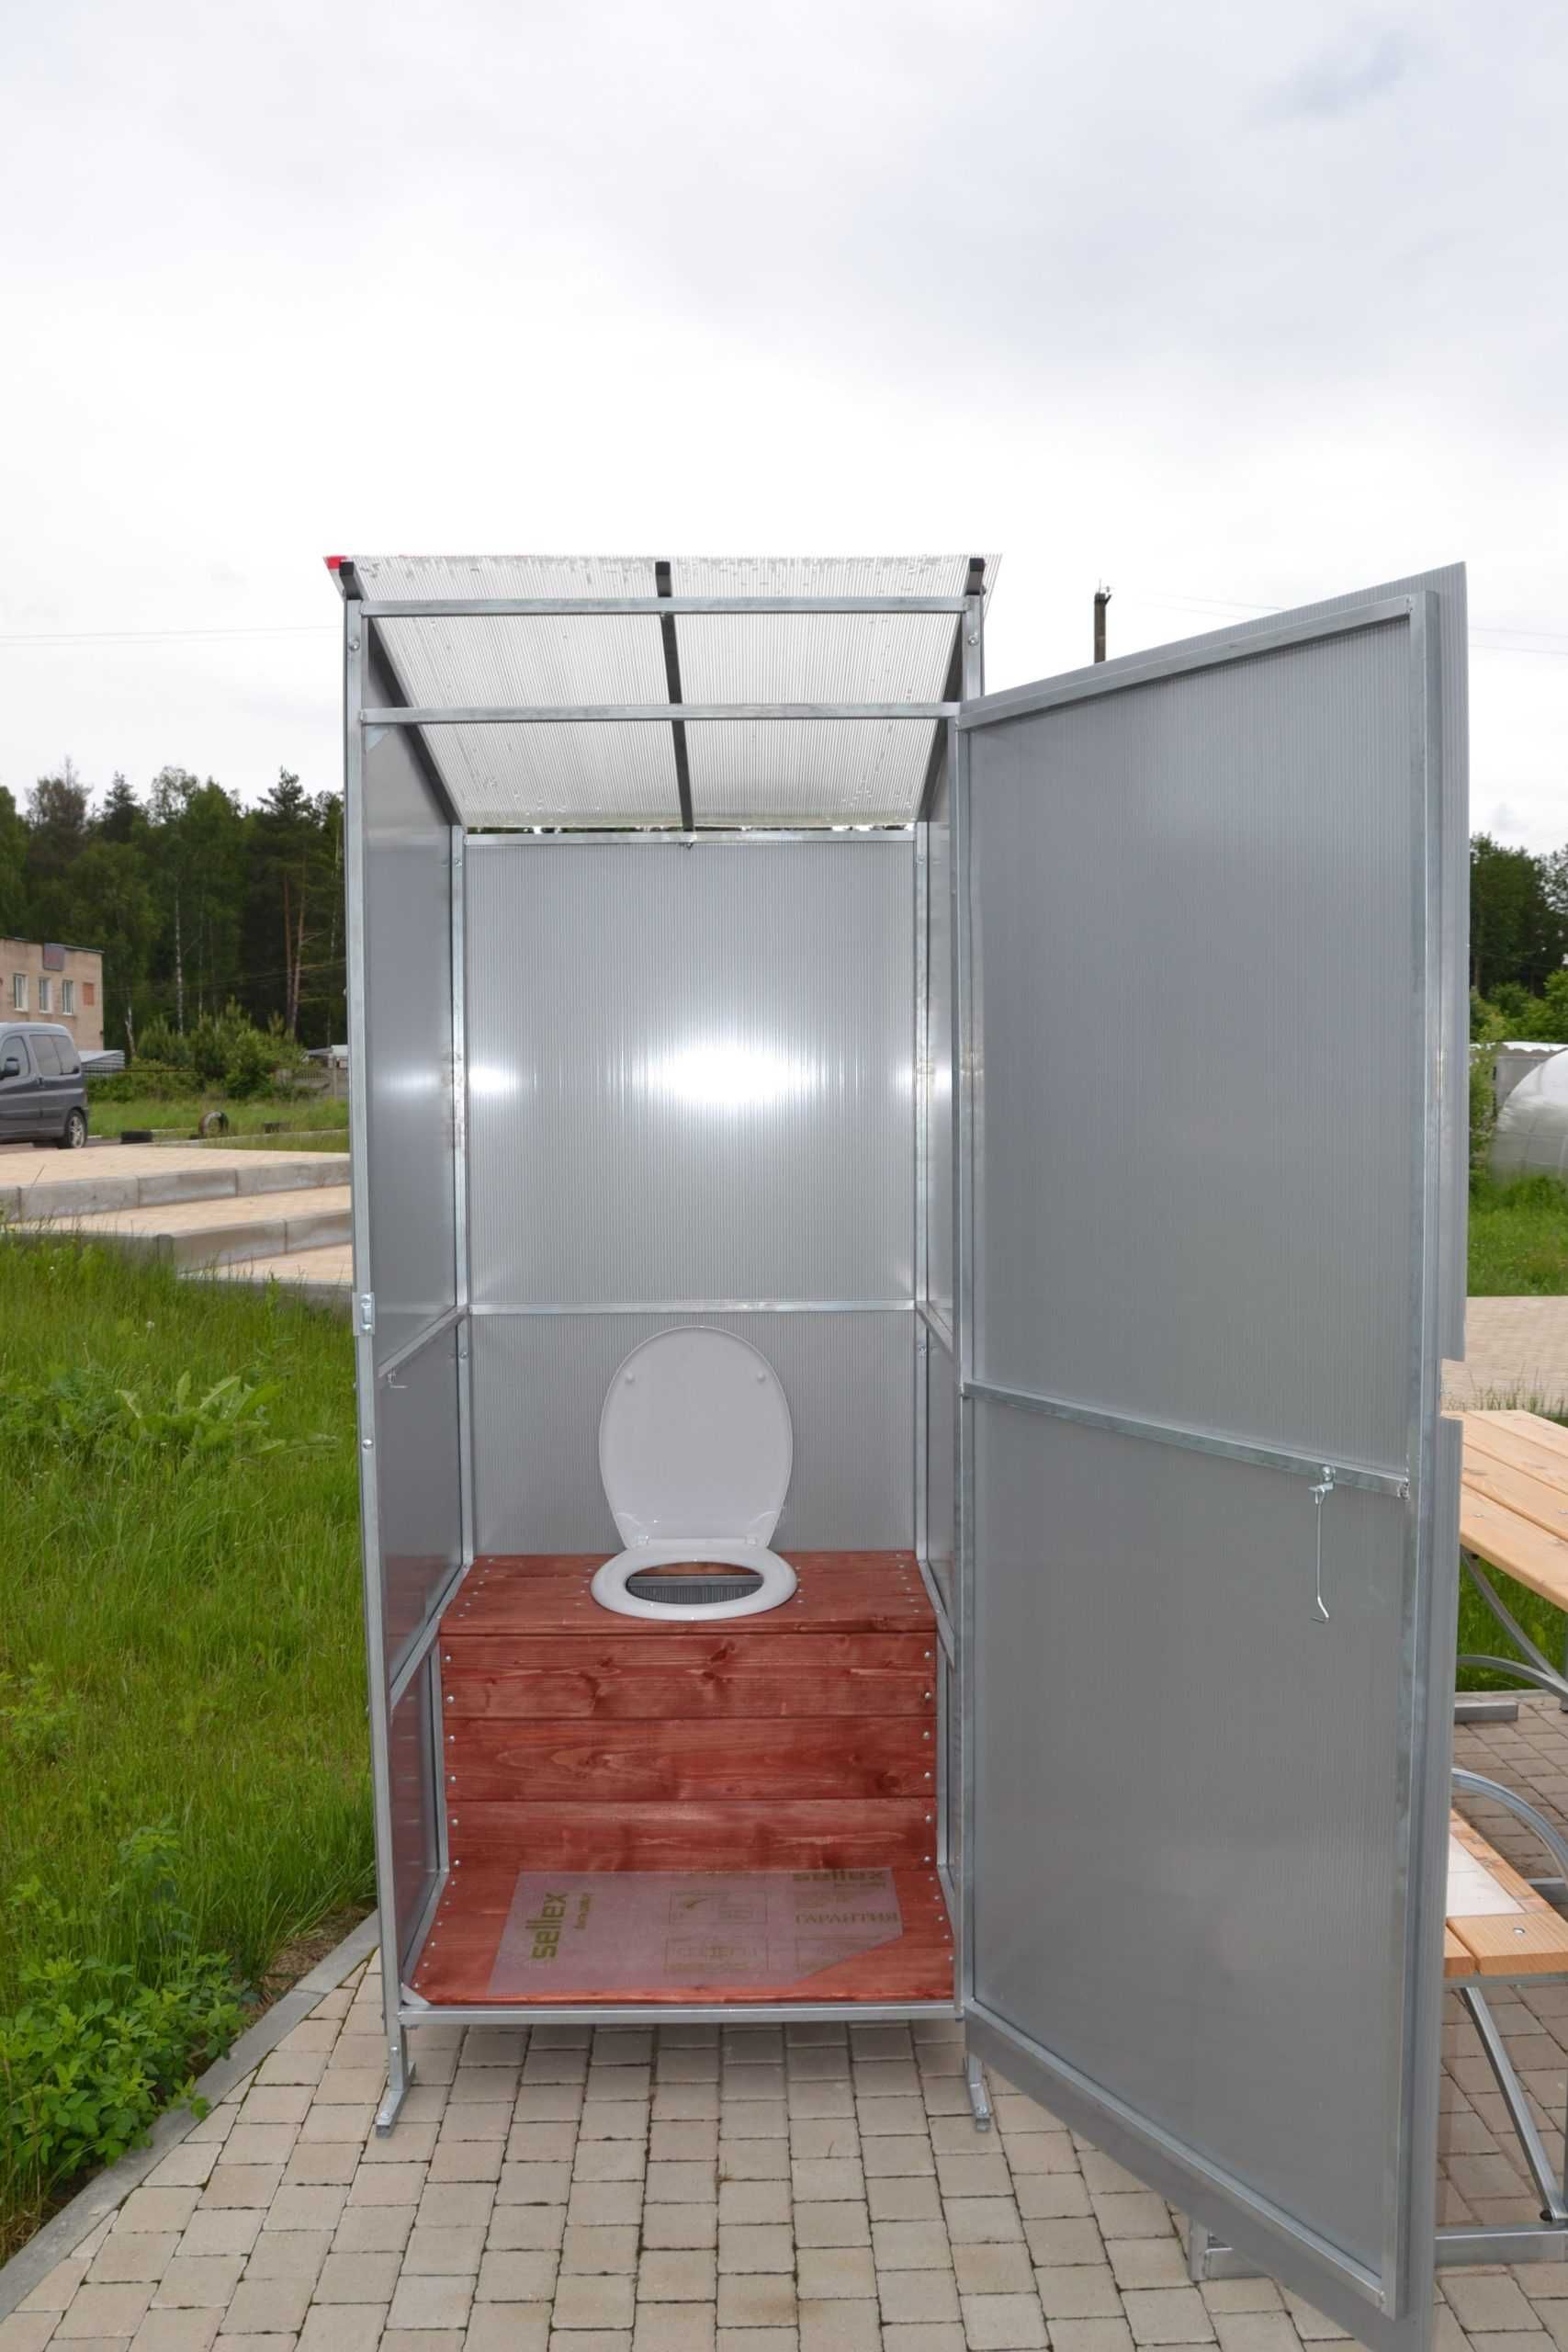 Дачный туалет АГРОСФЕРА из поликарбоната. В рассрочку на 3 месяца!